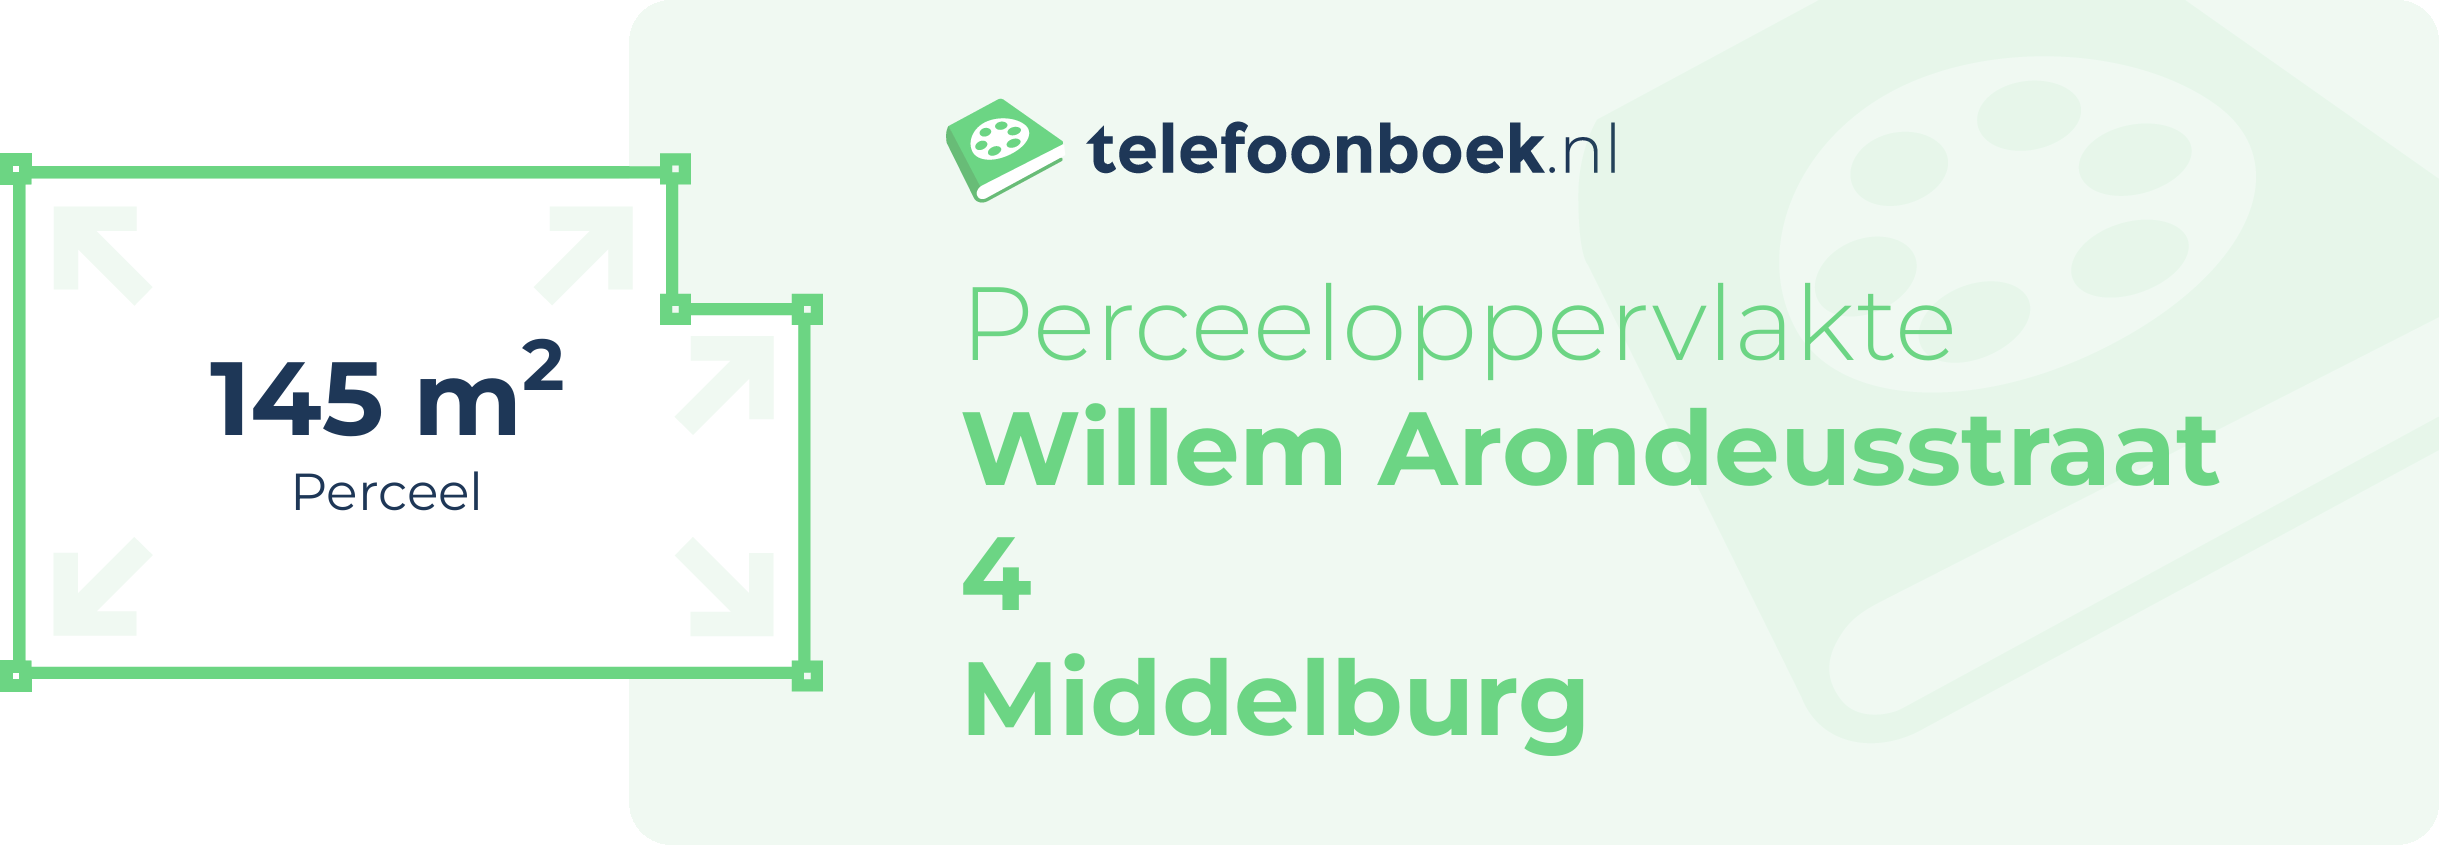 Perceeloppervlakte Willem Arondeusstraat 4 Middelburg